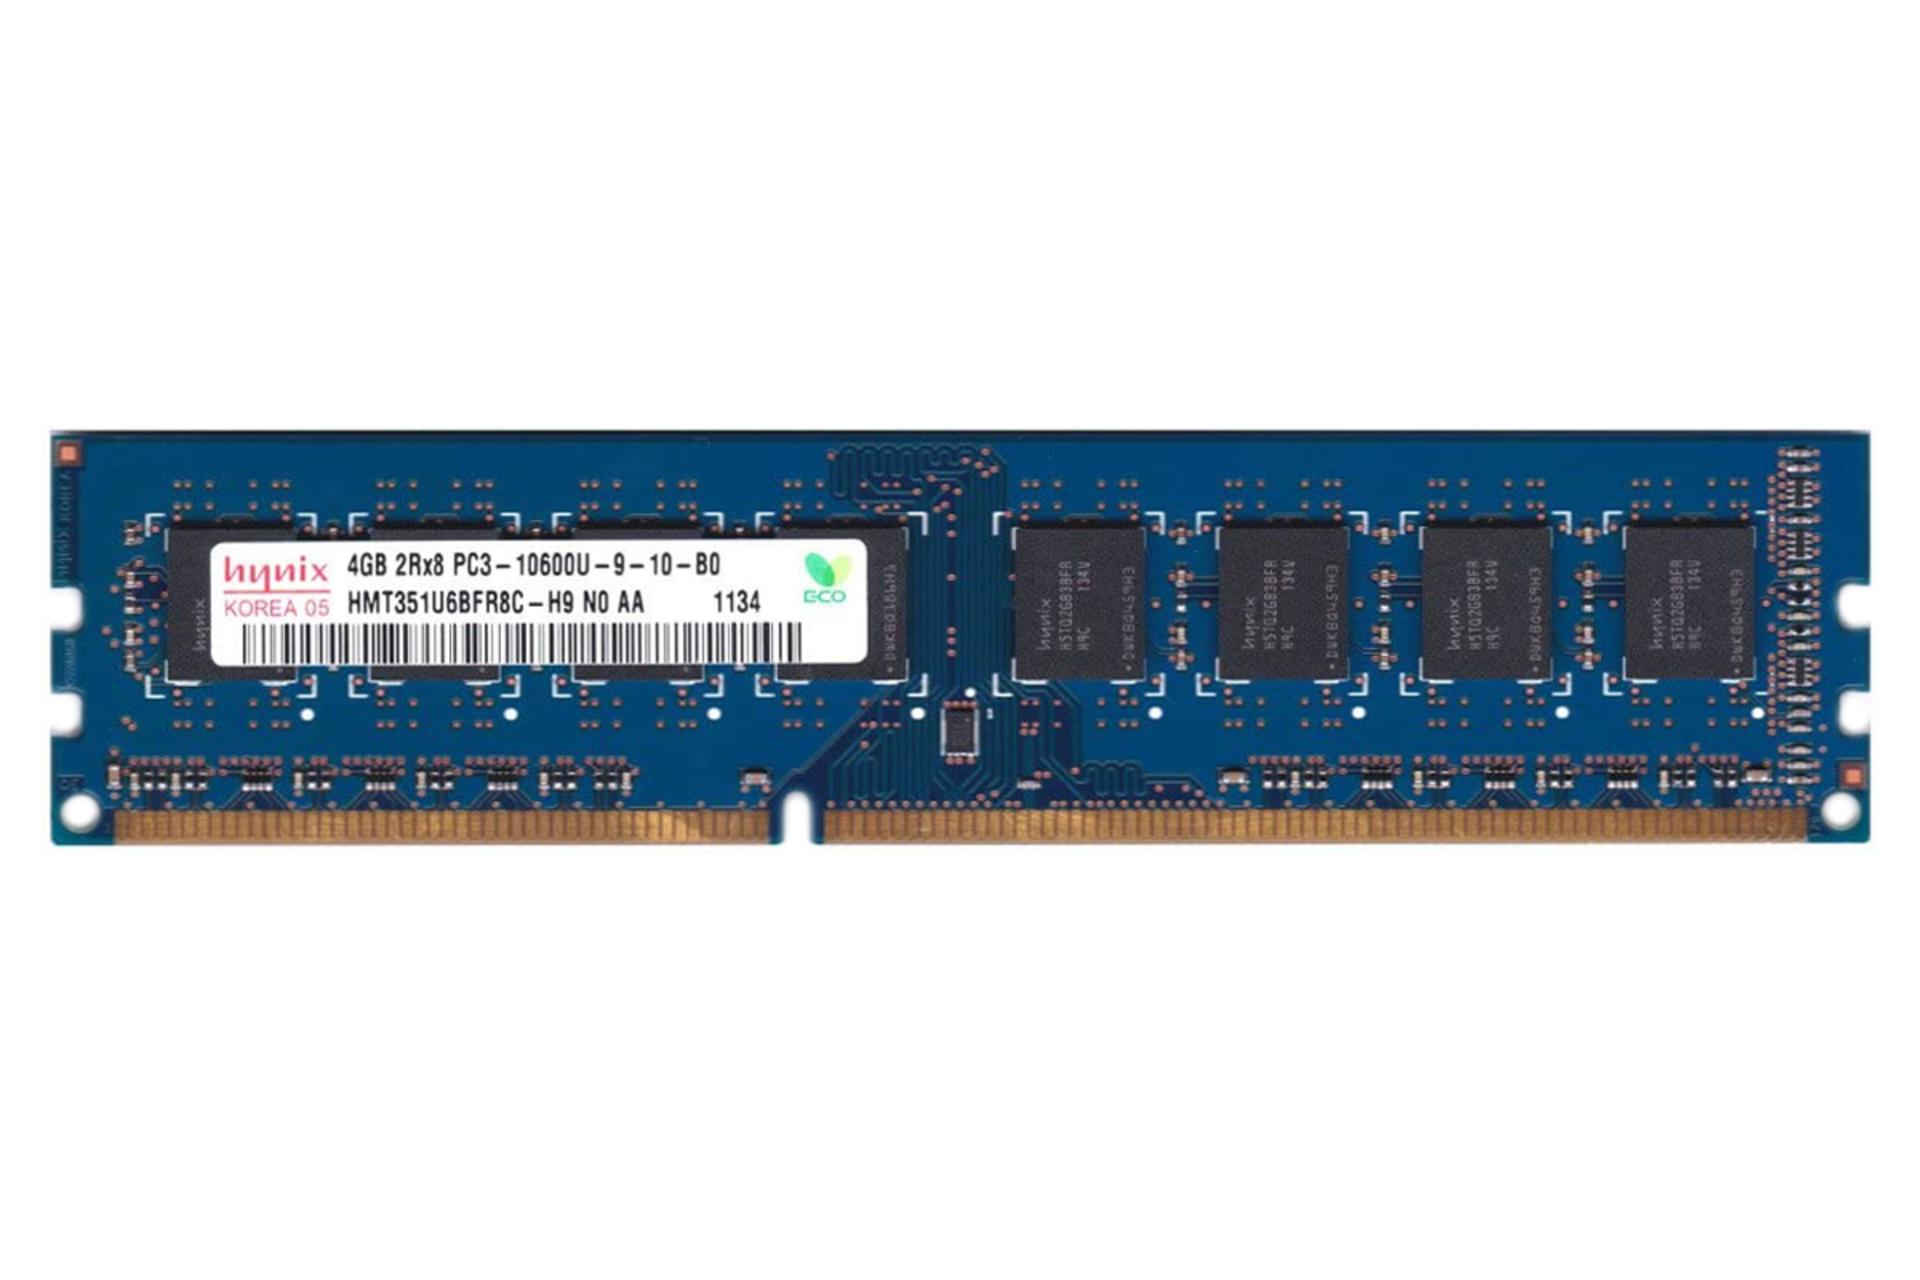 رم اس کی هاینیکس HMT351U6BFR8C-H9 ظرفیت 4 گیگابایت از نوع DDR3-1333